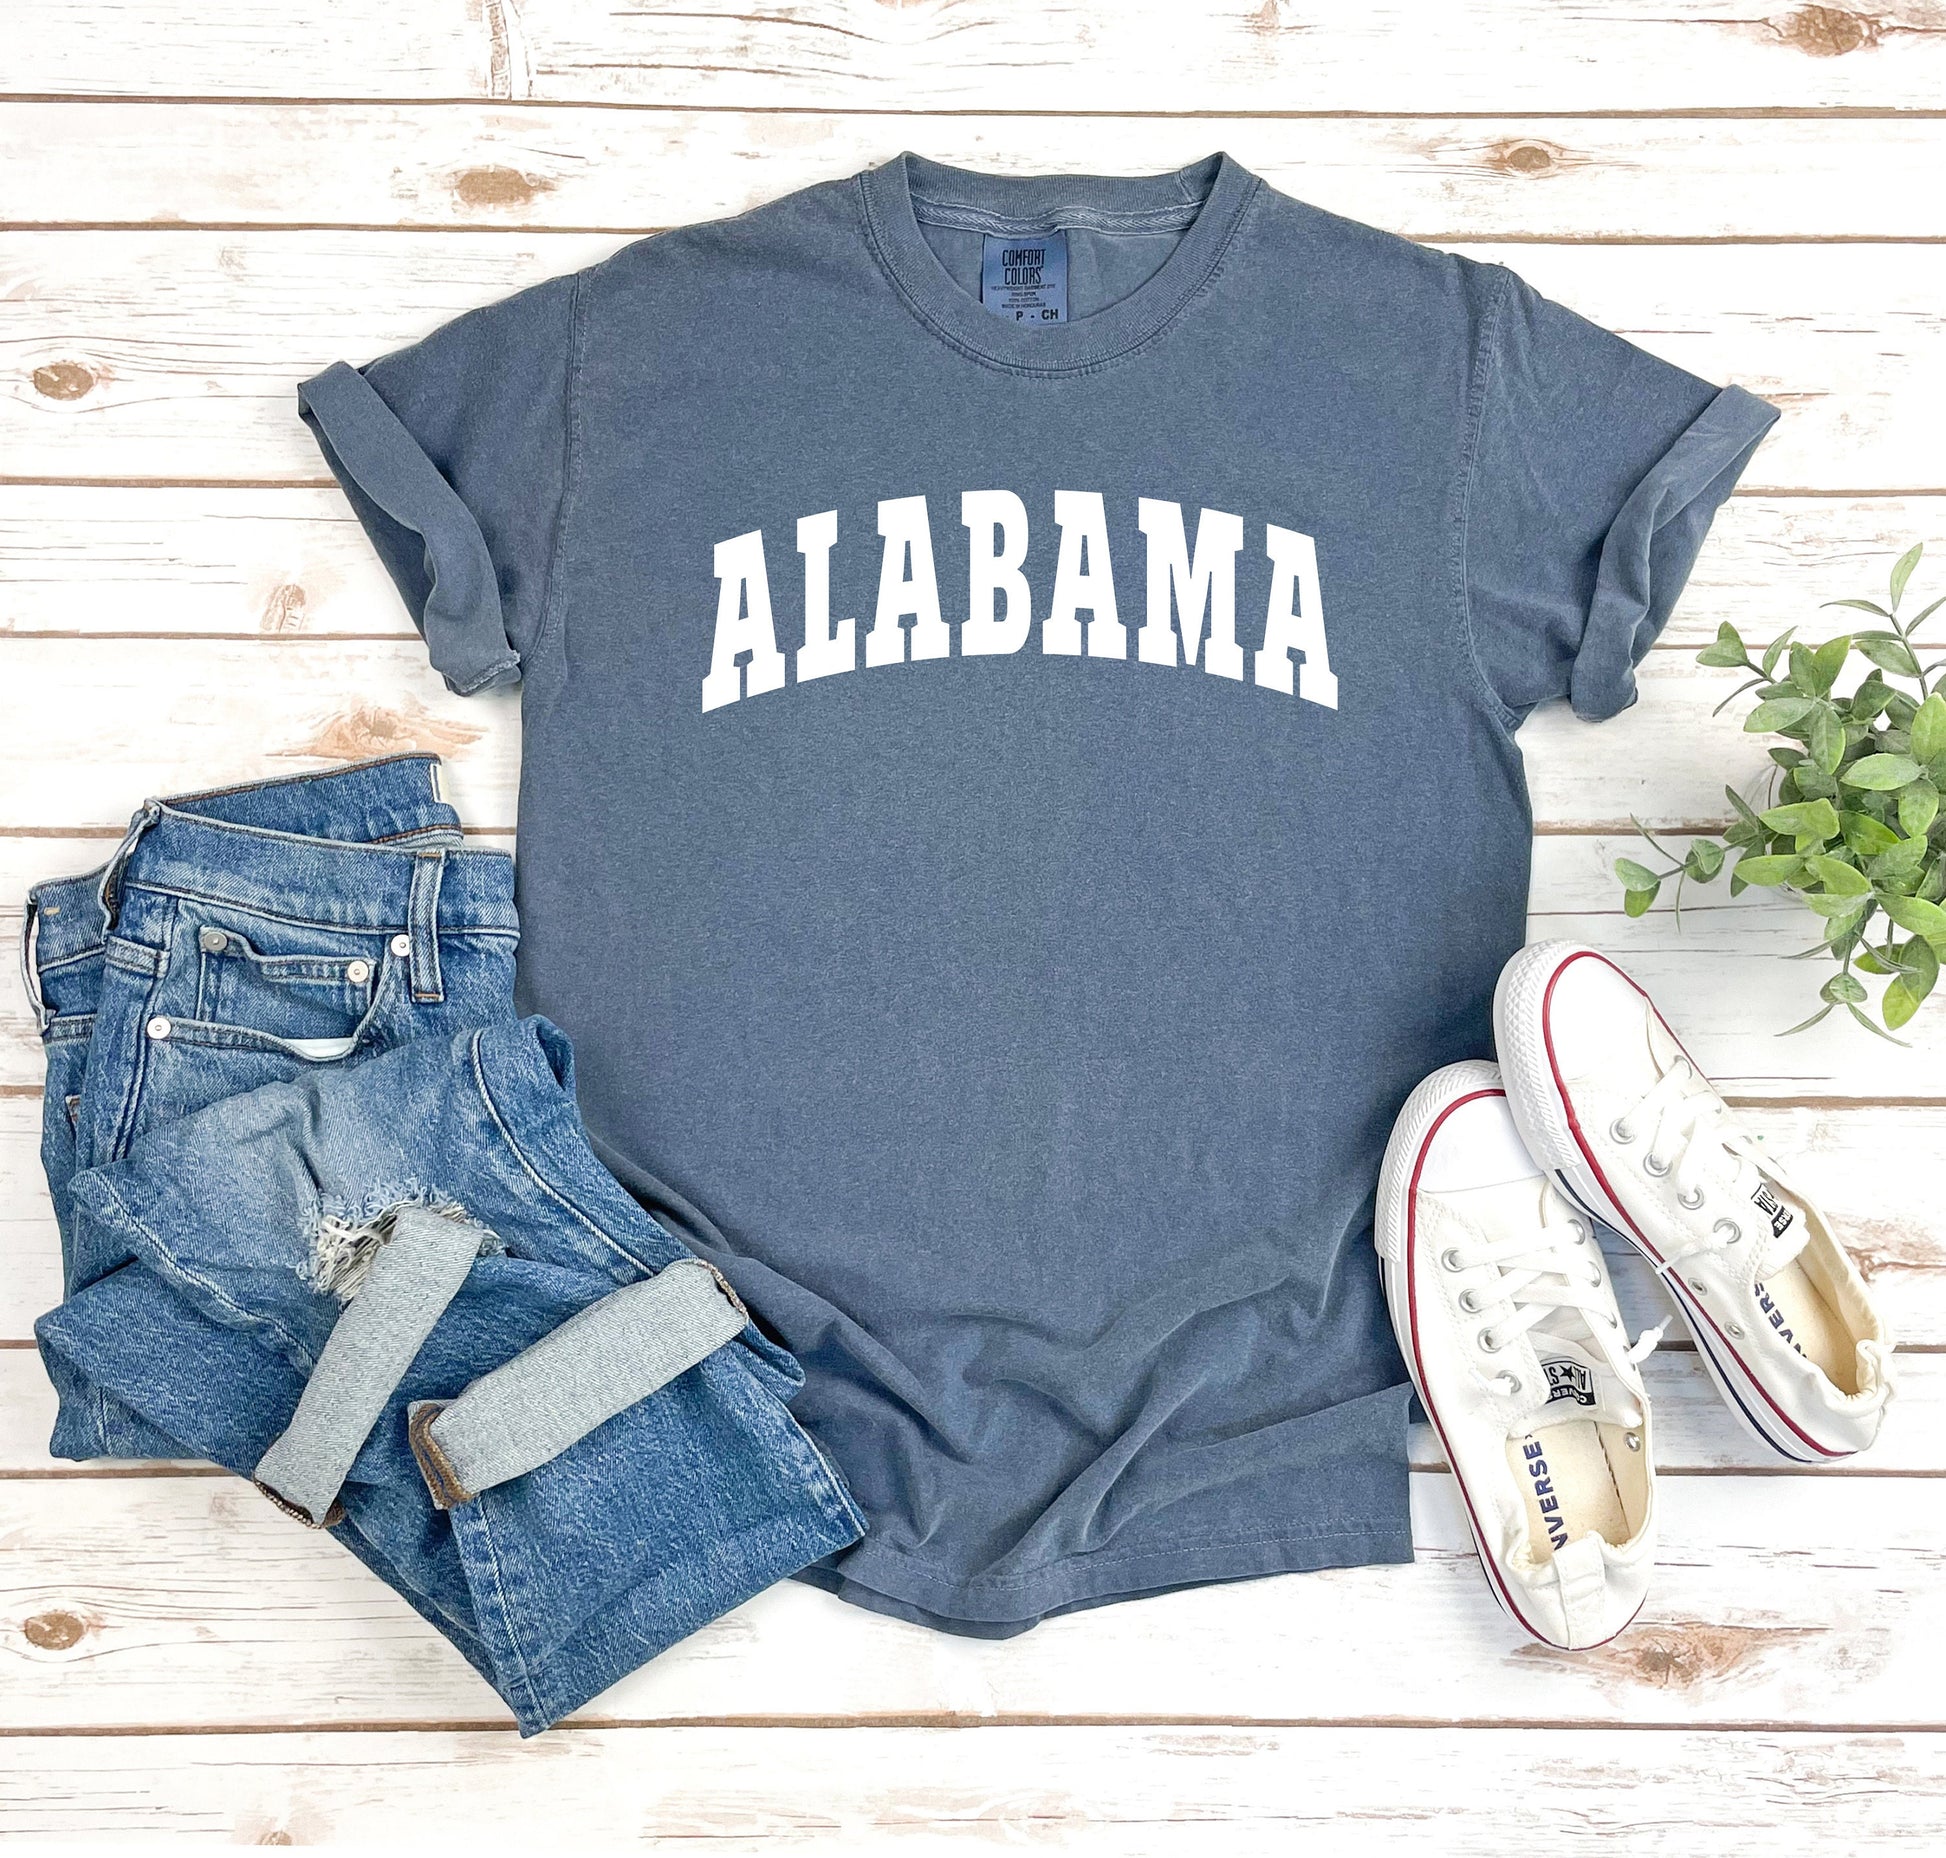 Alabama tshirt